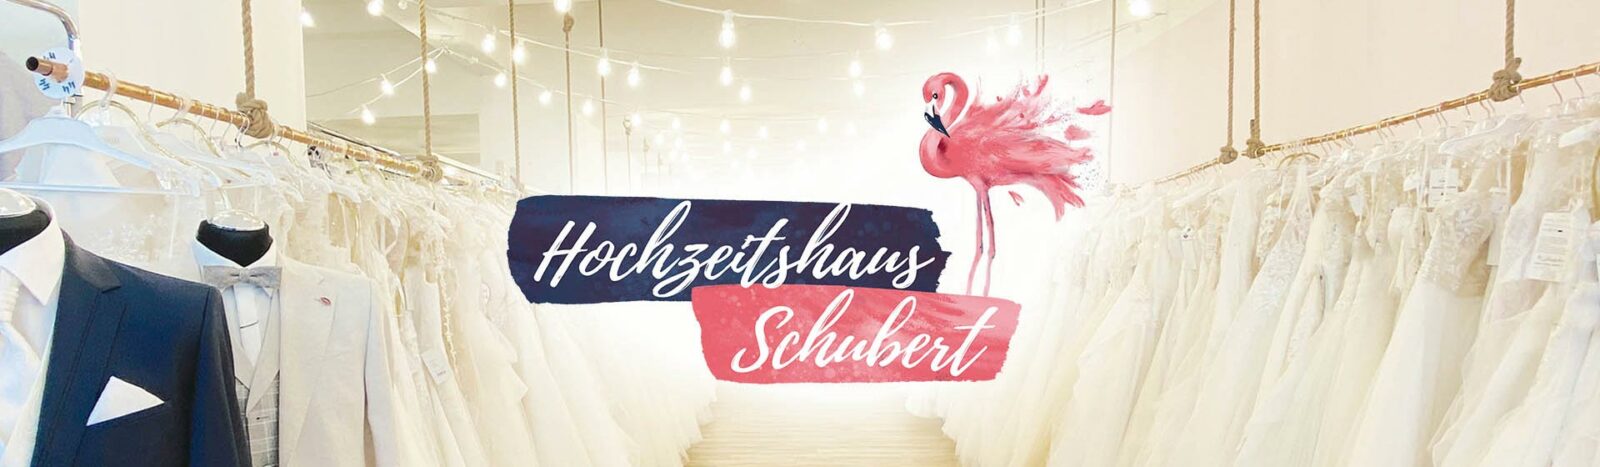 Hochzeitshaus Schubert Strausberg